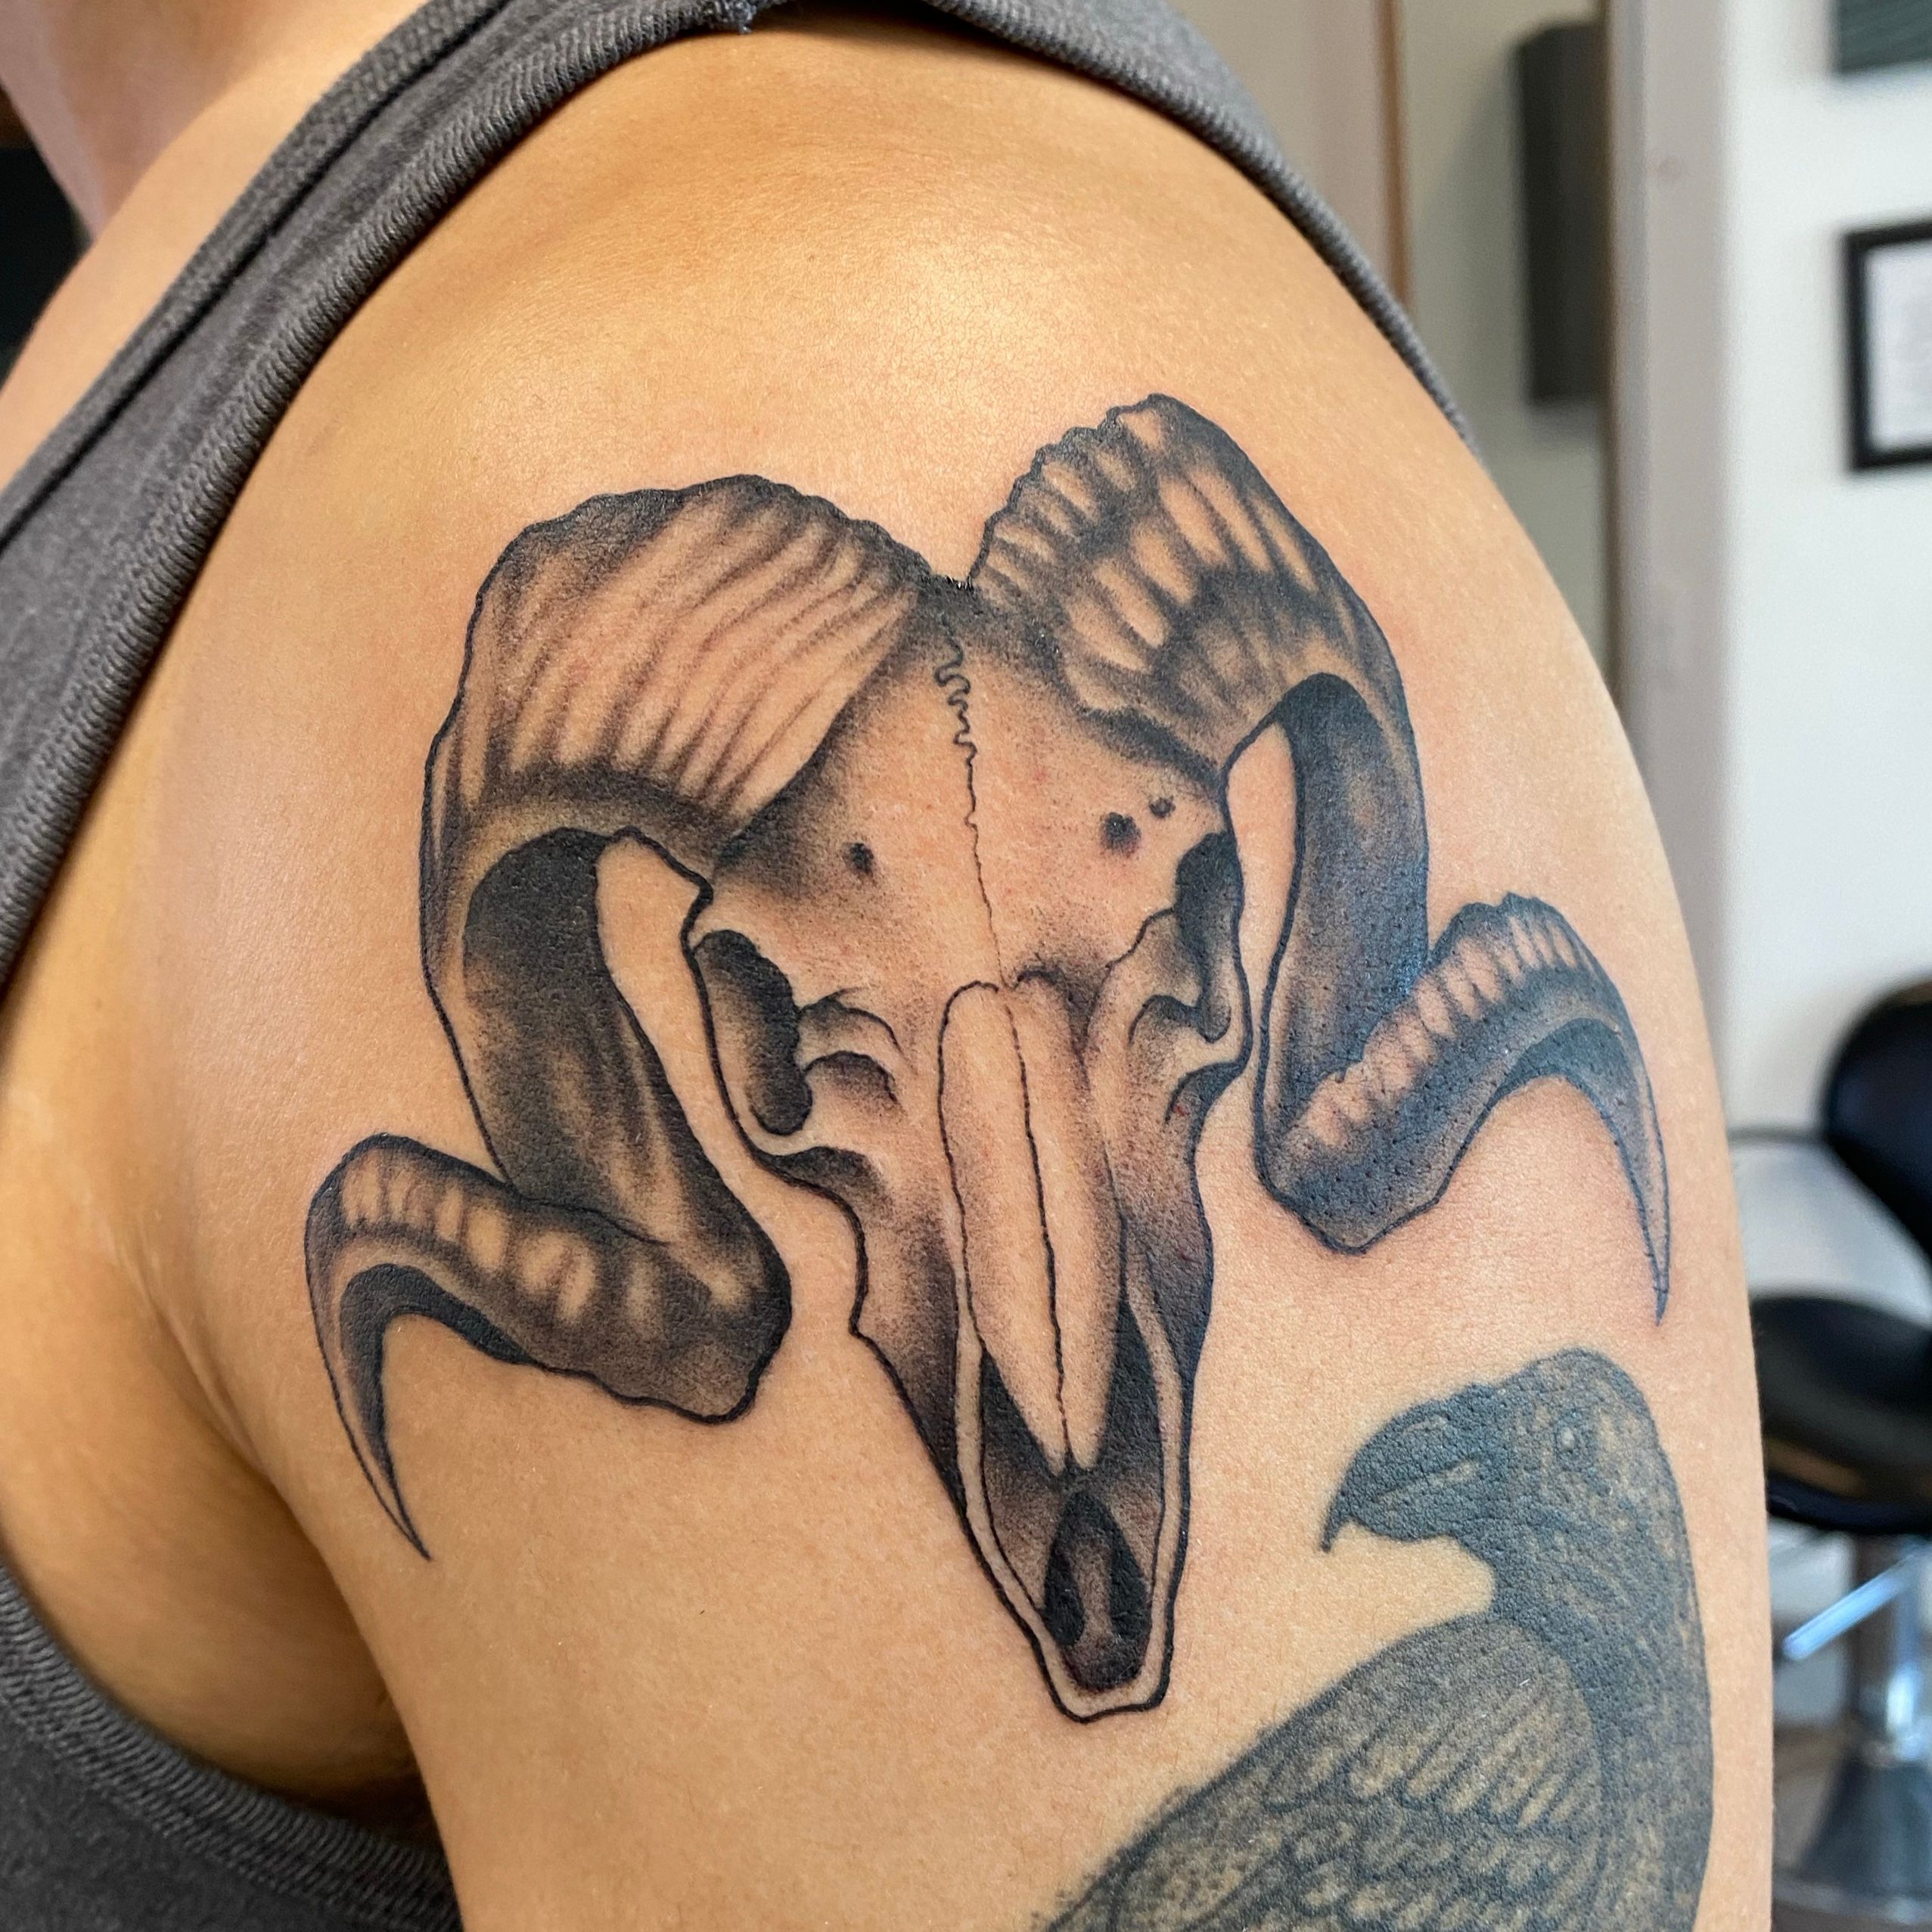 ram skull tattoo designs